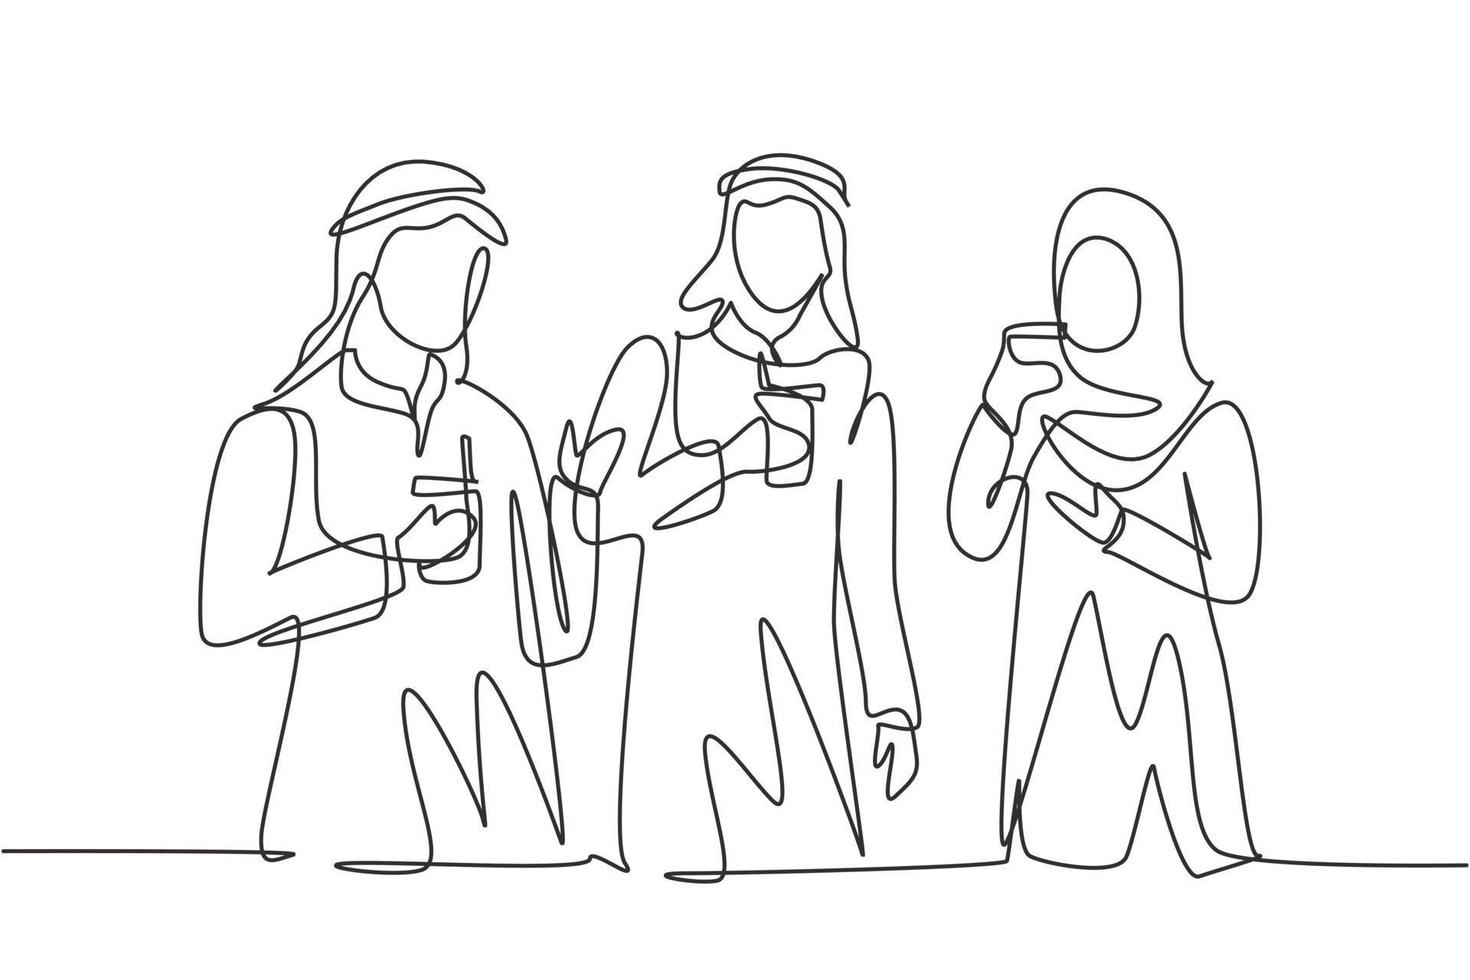 Los adolescentes árabes de dibujo de una sola línea beben refrescos para celebrar su amistad celebrando una fiesta en el parque. feliz momento relajante. Ilustración de vector gráfico de diseño de dibujo de línea continua moderna